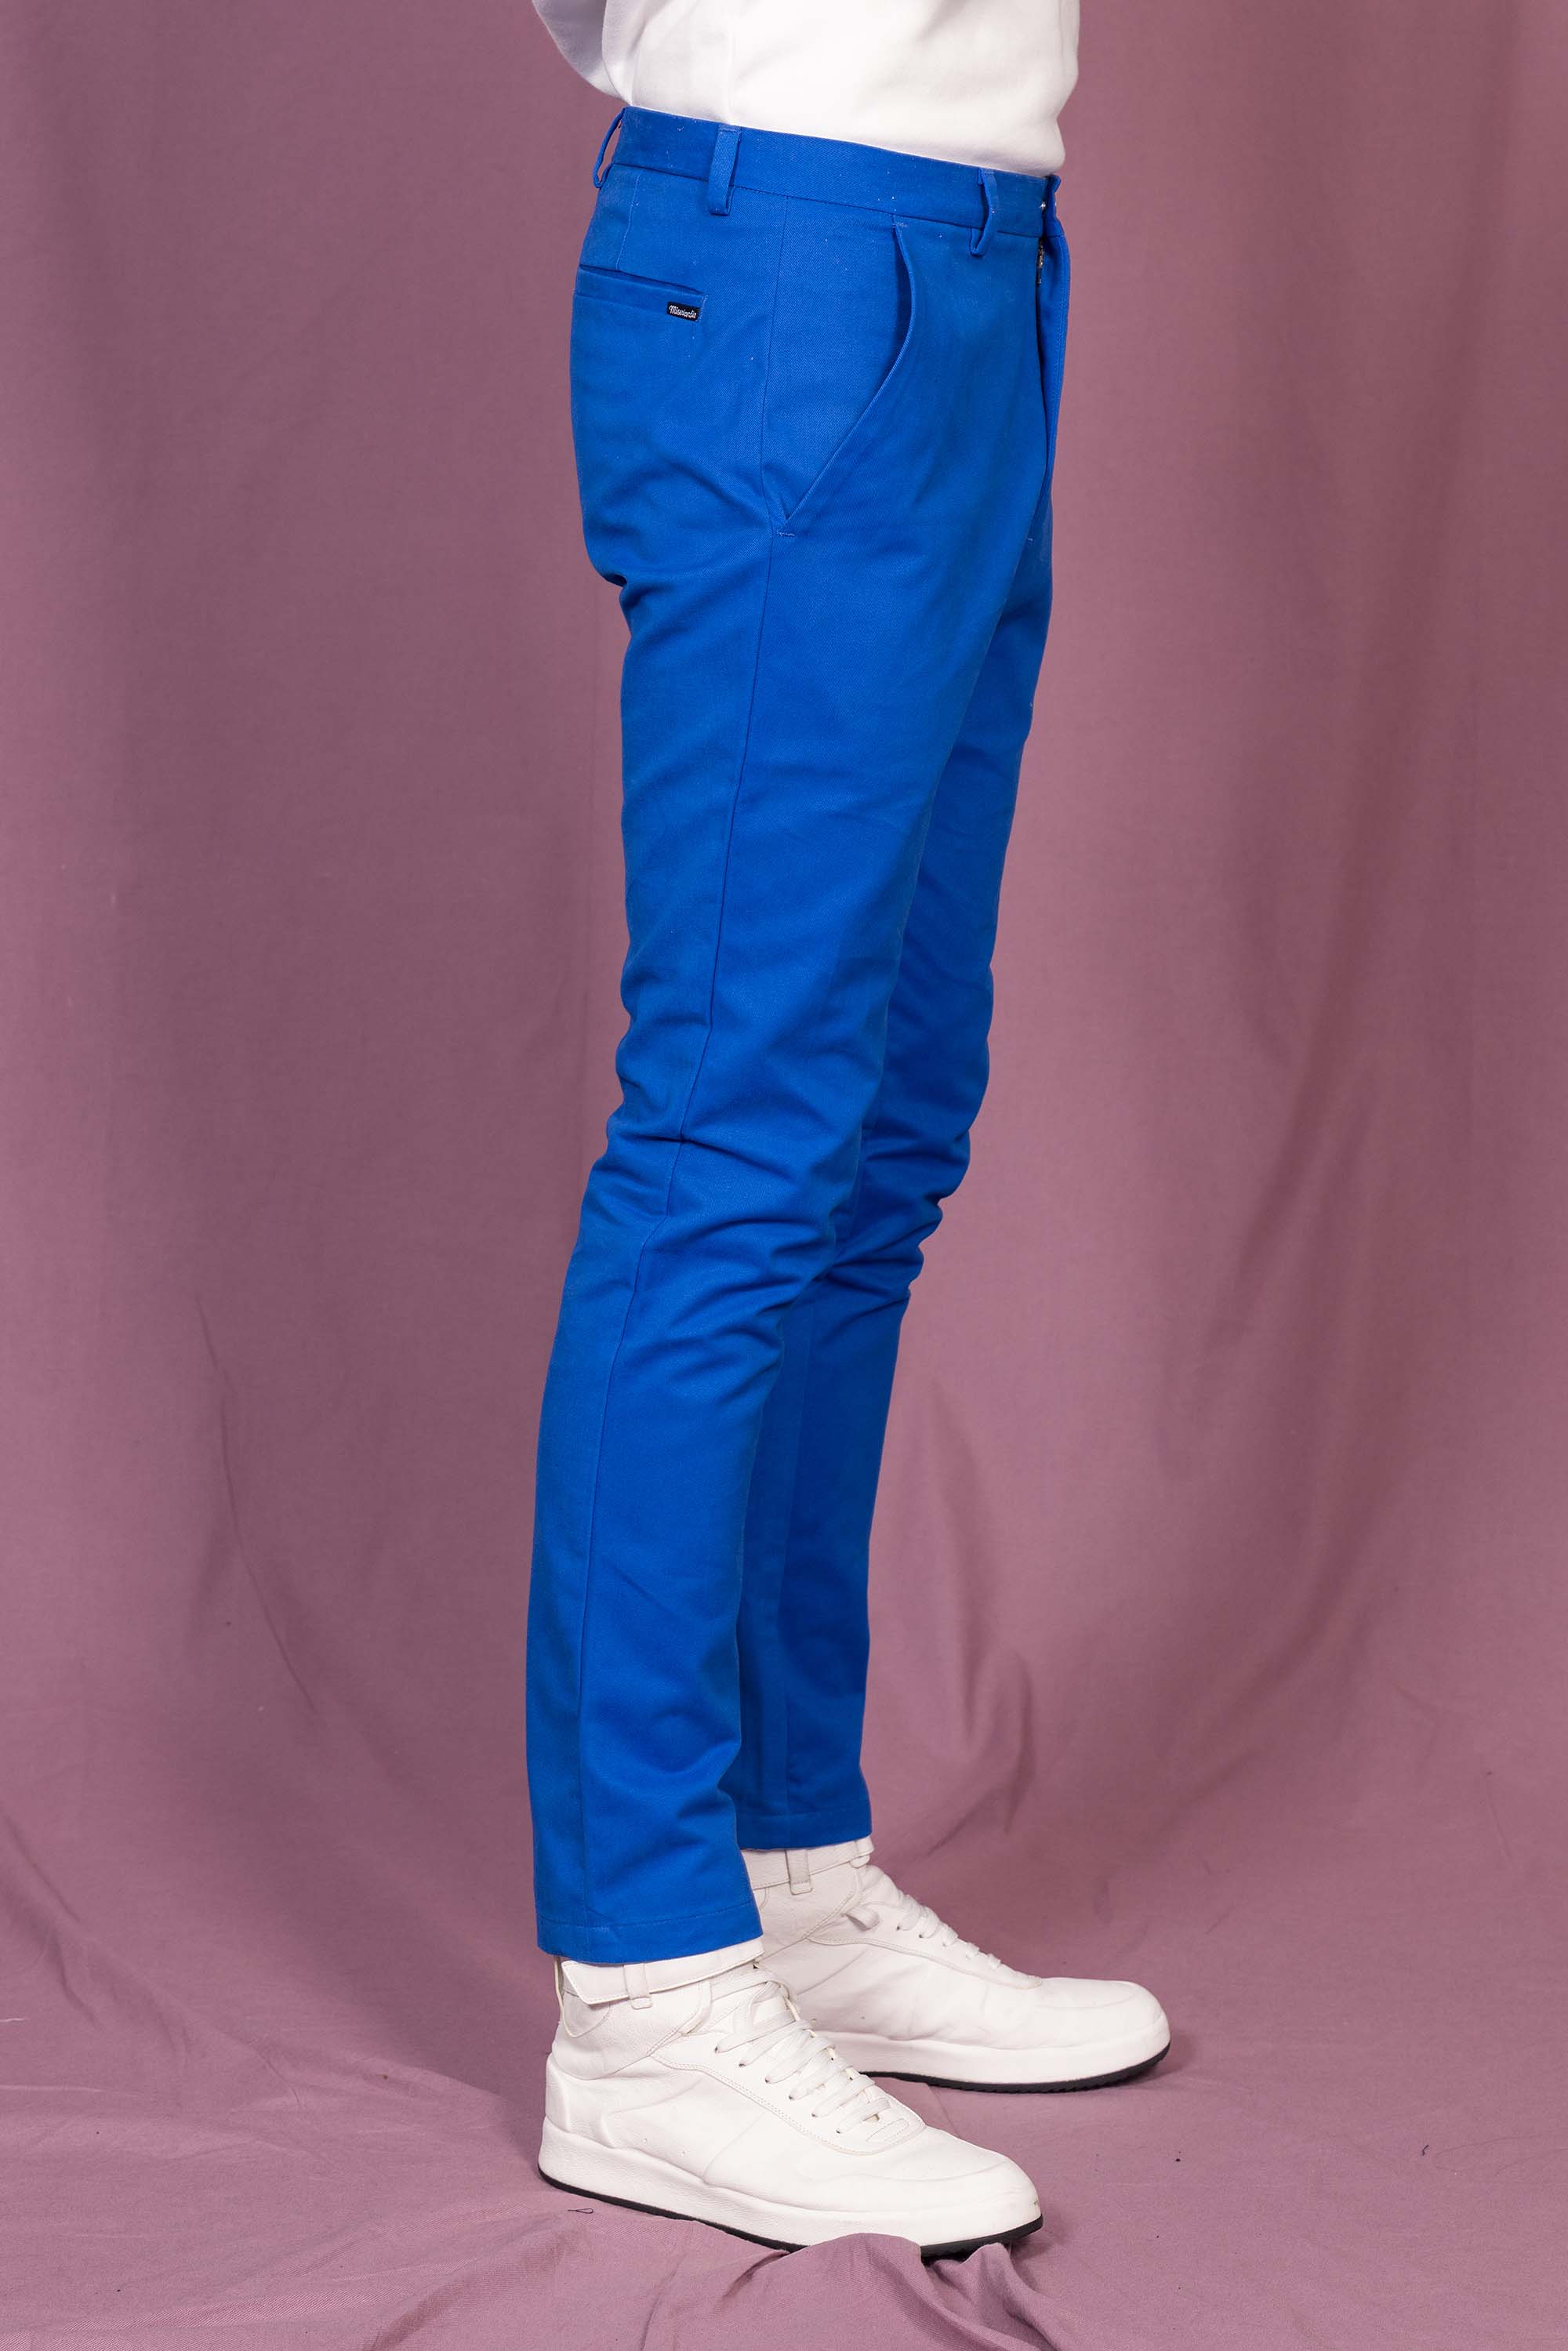 Pantalon General Bleu Saphir pantalons élégants pour hommes, déclinés dans une large gamme de motifs et de coupes